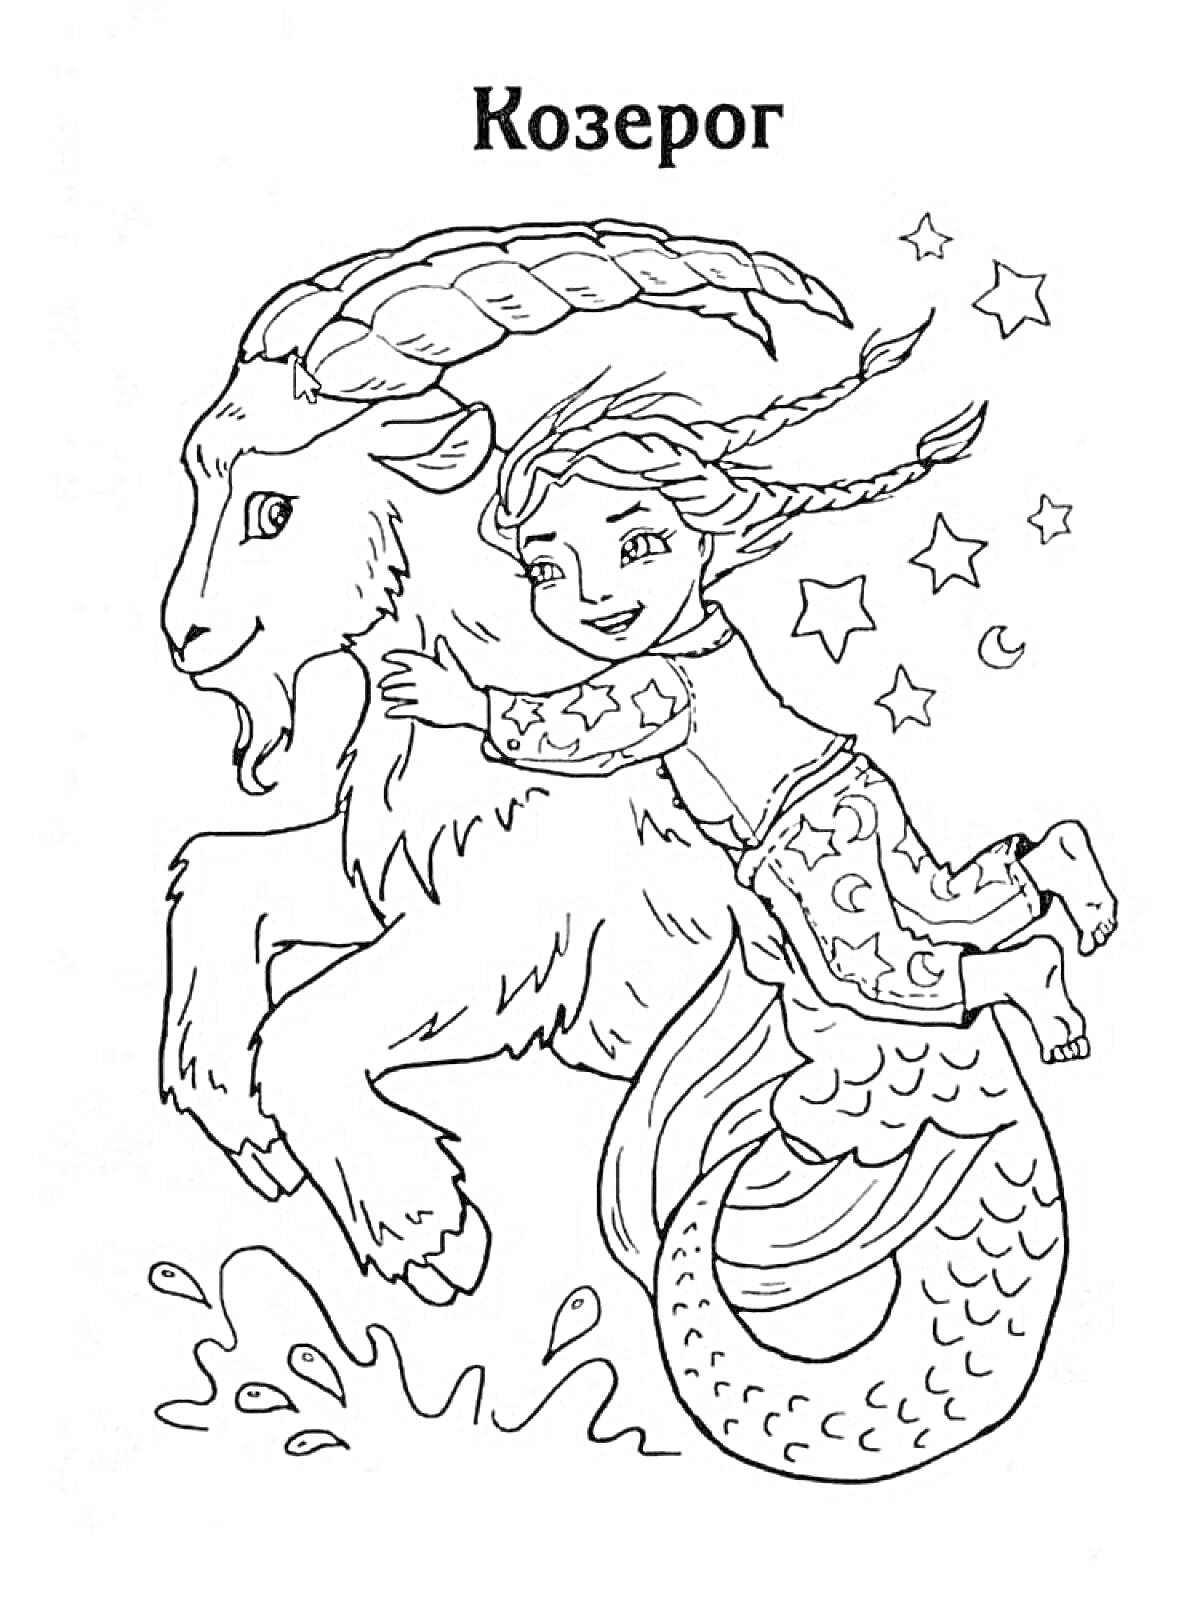 Раскраска Козерог c мифическим животным и девочкой на спине, звезды, полумесяц